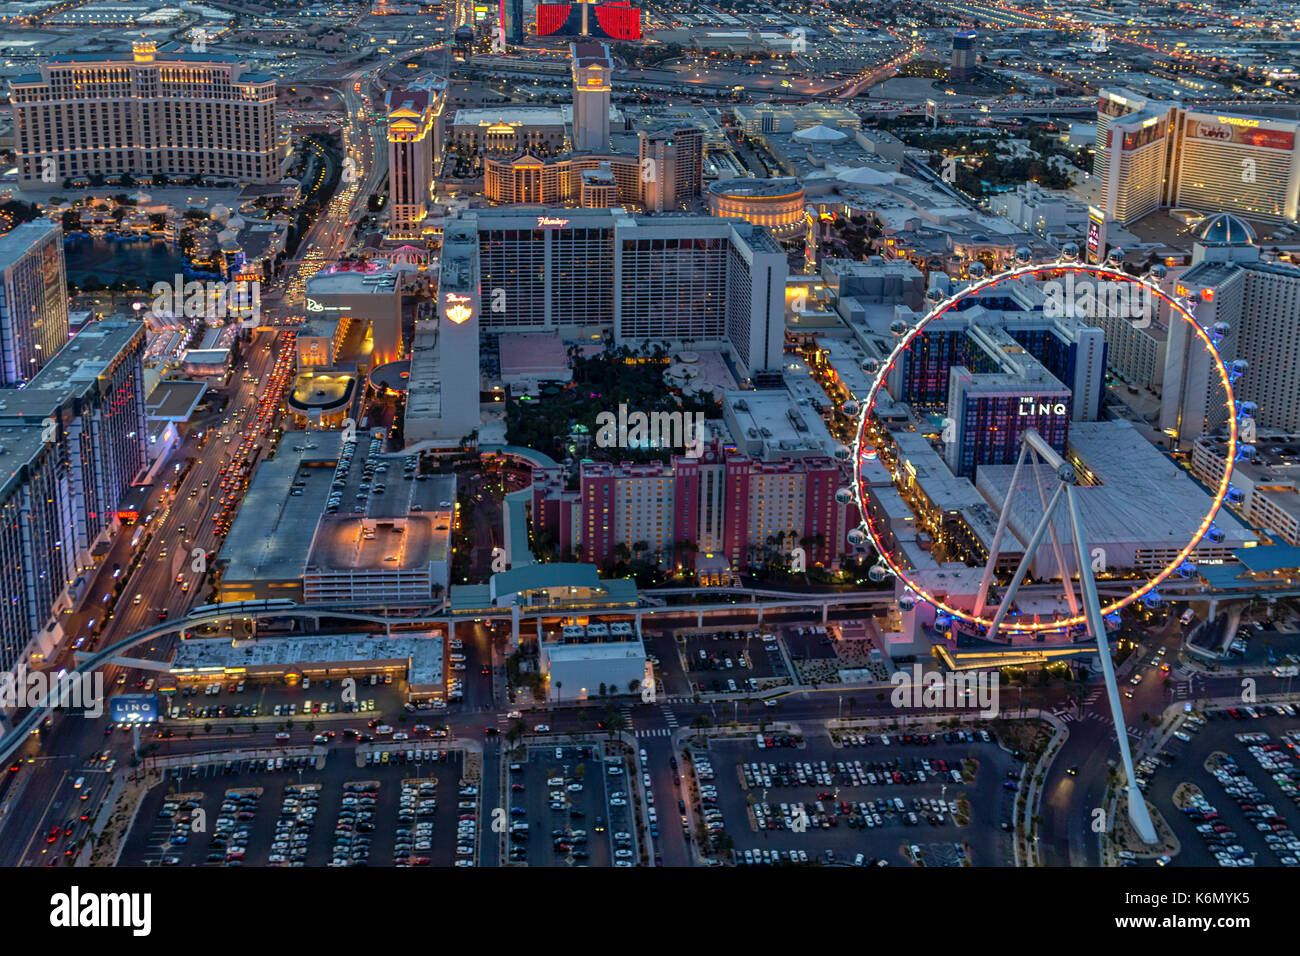 Las Vegas Strip-Antenne - Luftbild der High Roller Riesenrad und dem Las Vegas Strip im Paradies, Nevada. Der High Roller ist derzeit das größte Aussichtsrad der Welt. Stockfoto